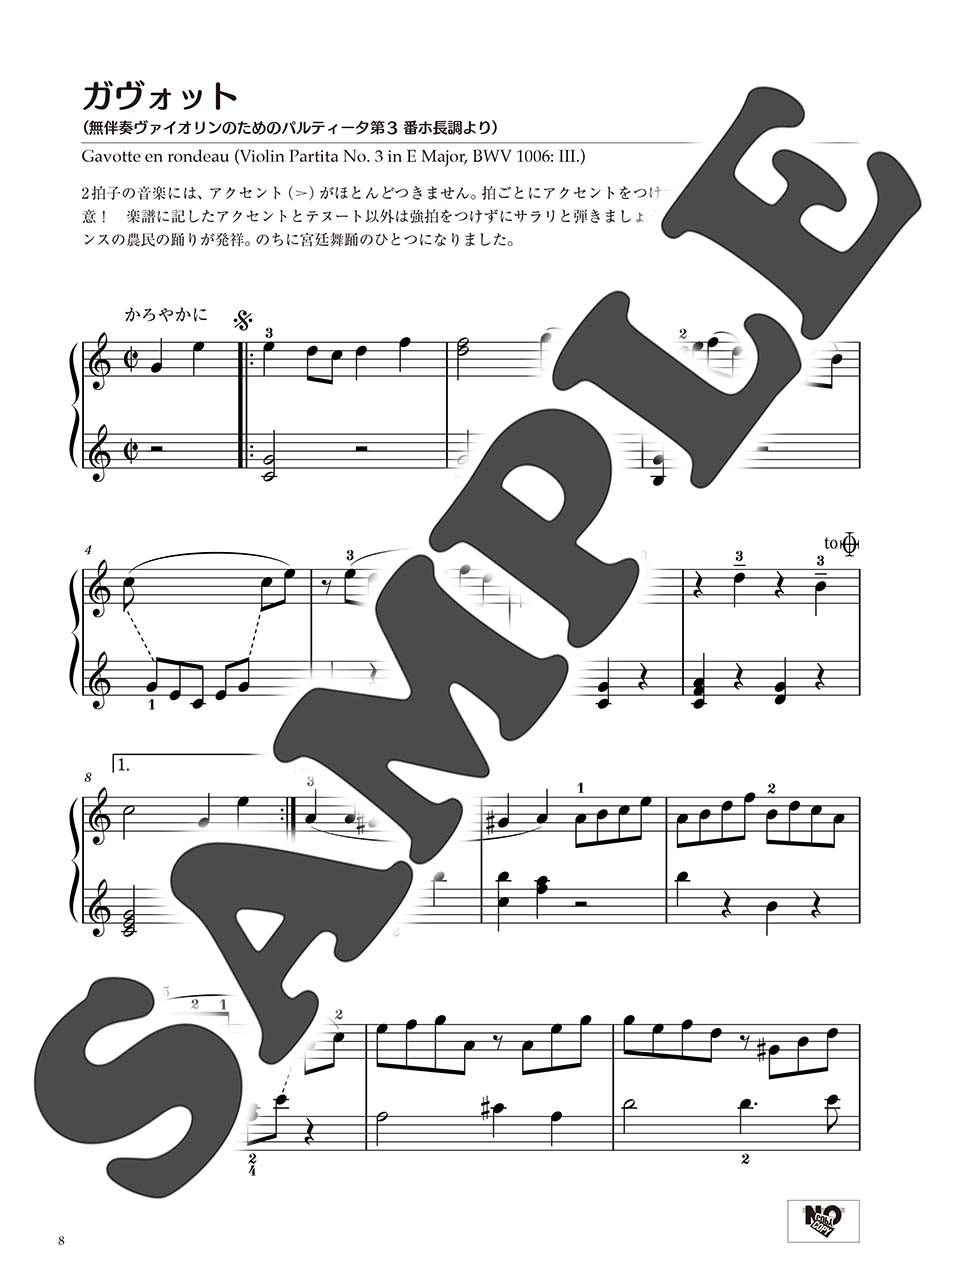 ピアノソロ 初中級 バッハの名曲を弾きたい! 管弦楽曲からカンタータまで… 編曲:塚谷水無子_2